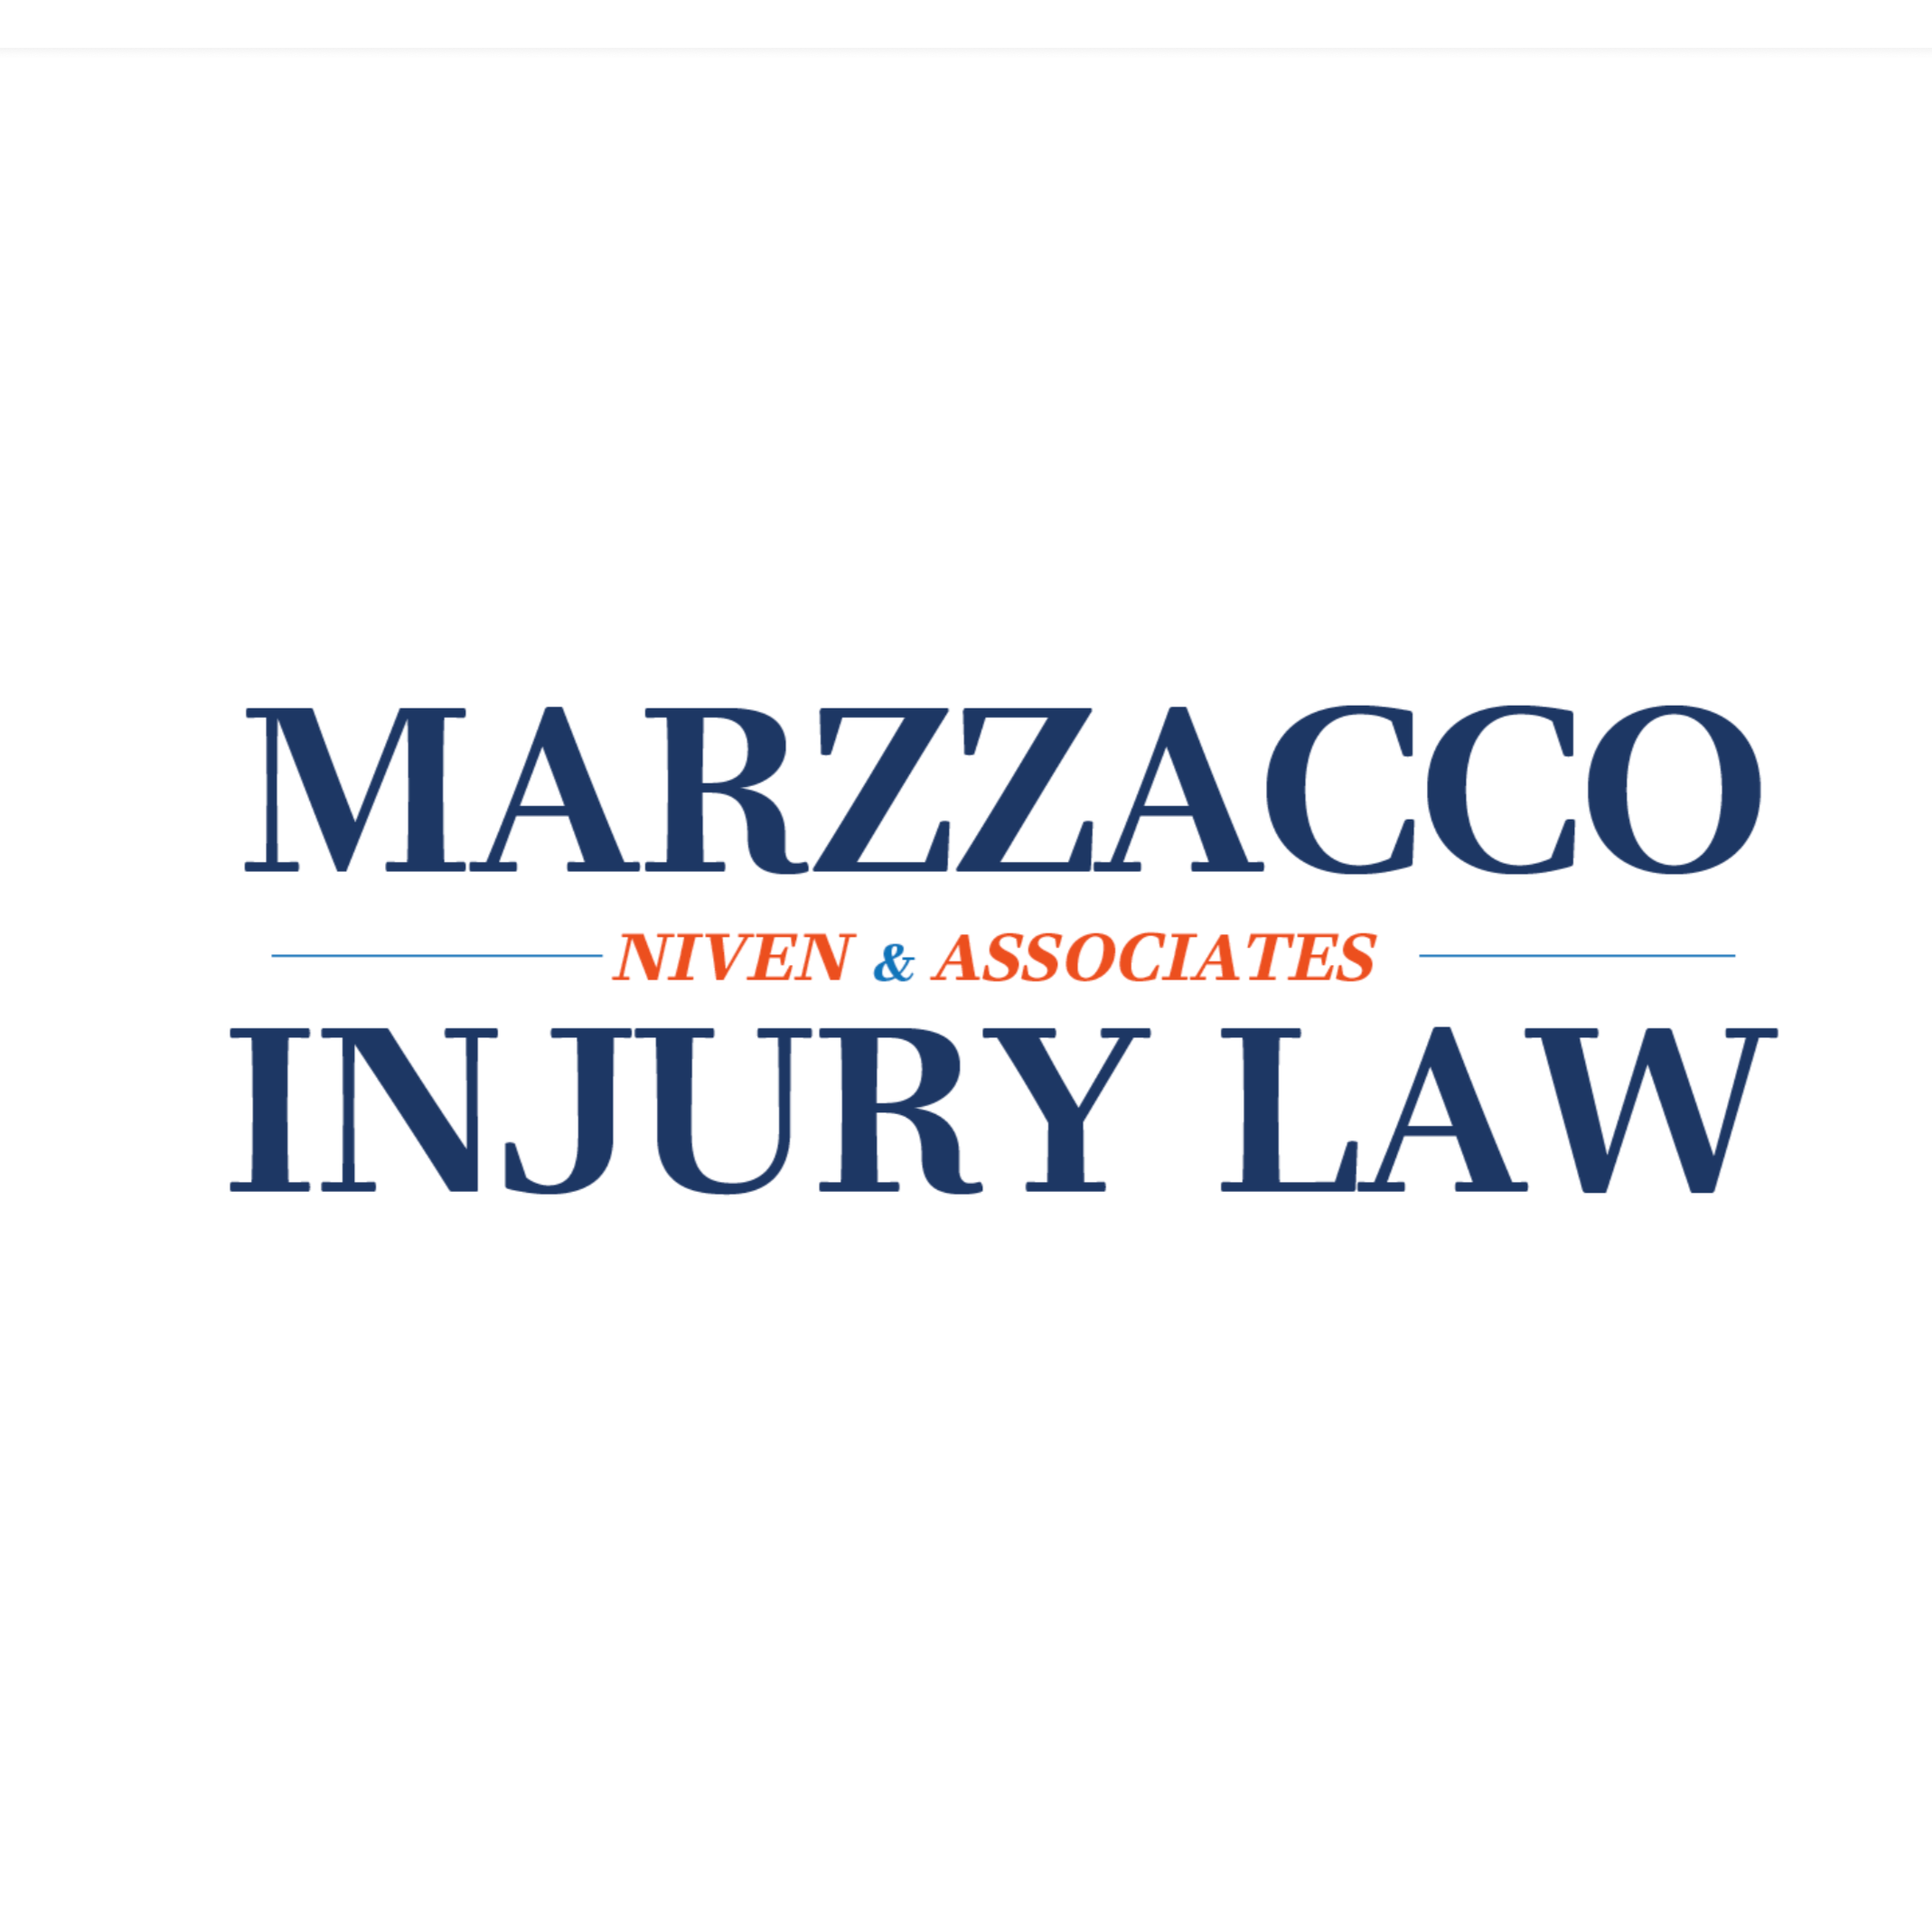 Marzzacco Niven & Associates Logo